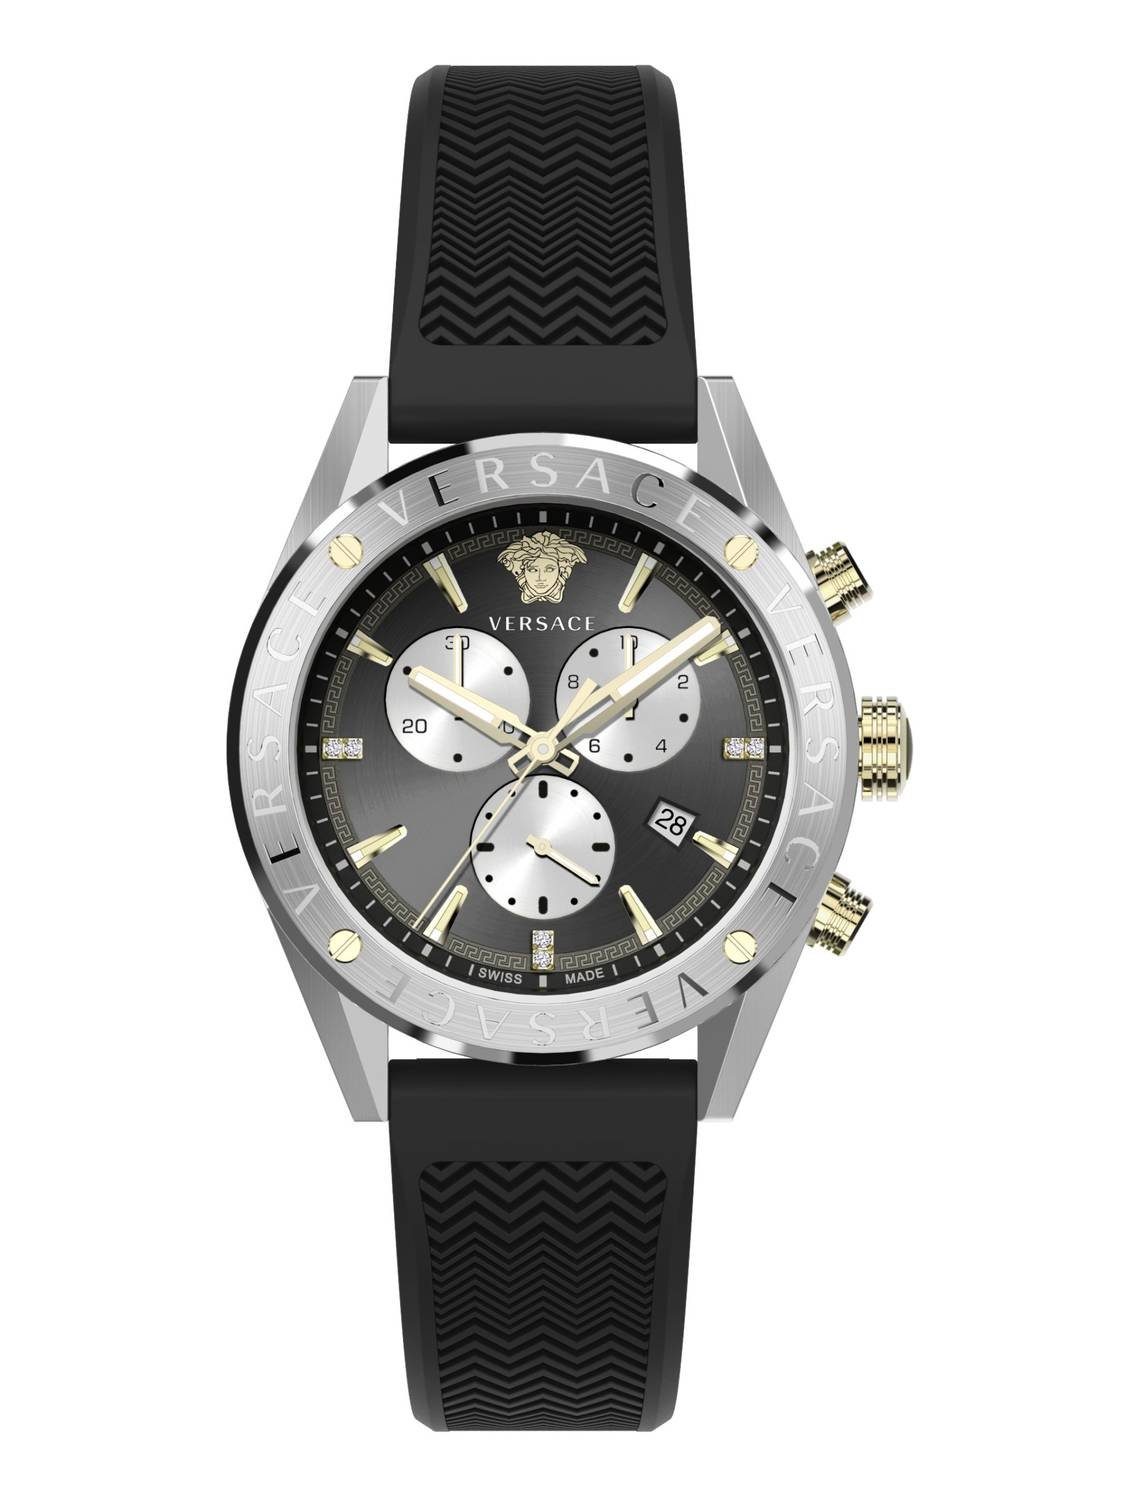 Schweizer Uhr V-Chrono Versace